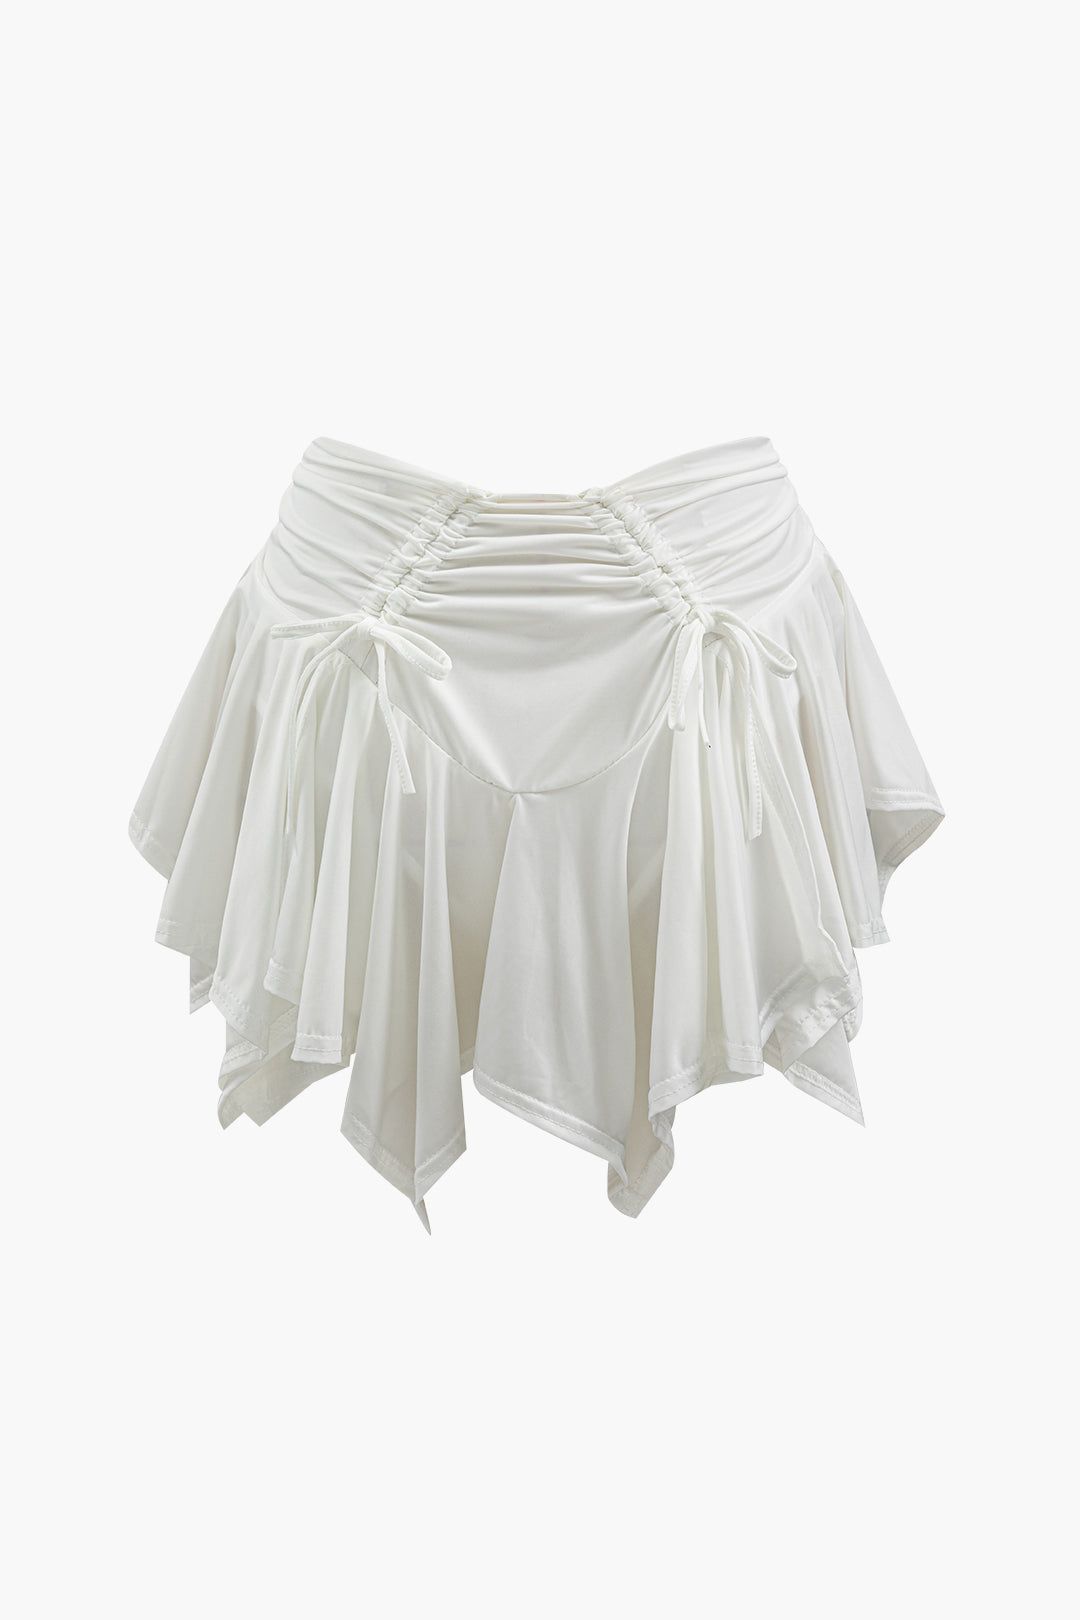 Ruched Drawstring Asymmetric Mini Skirt